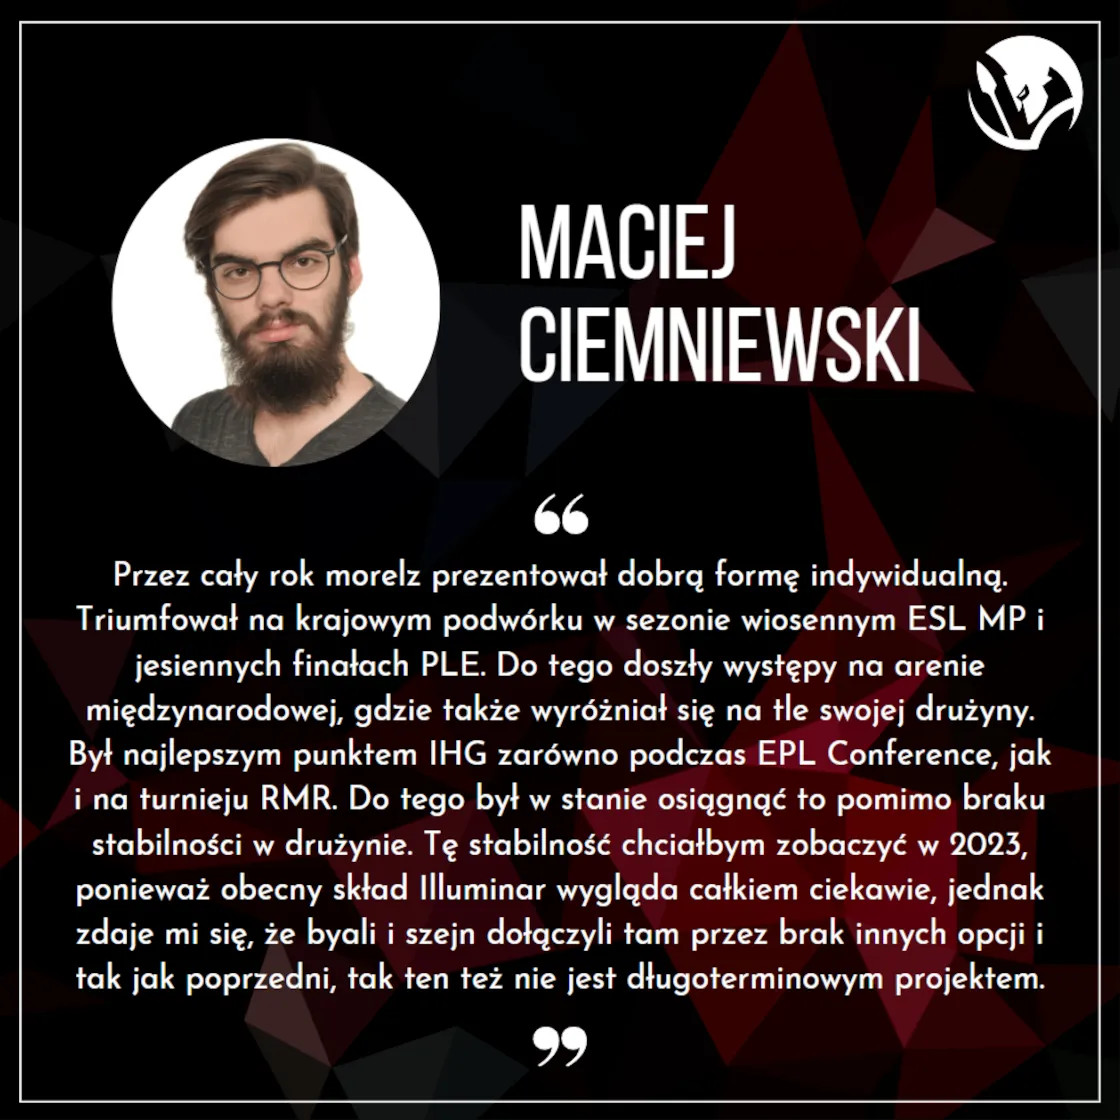 Maciej Ciemniewski